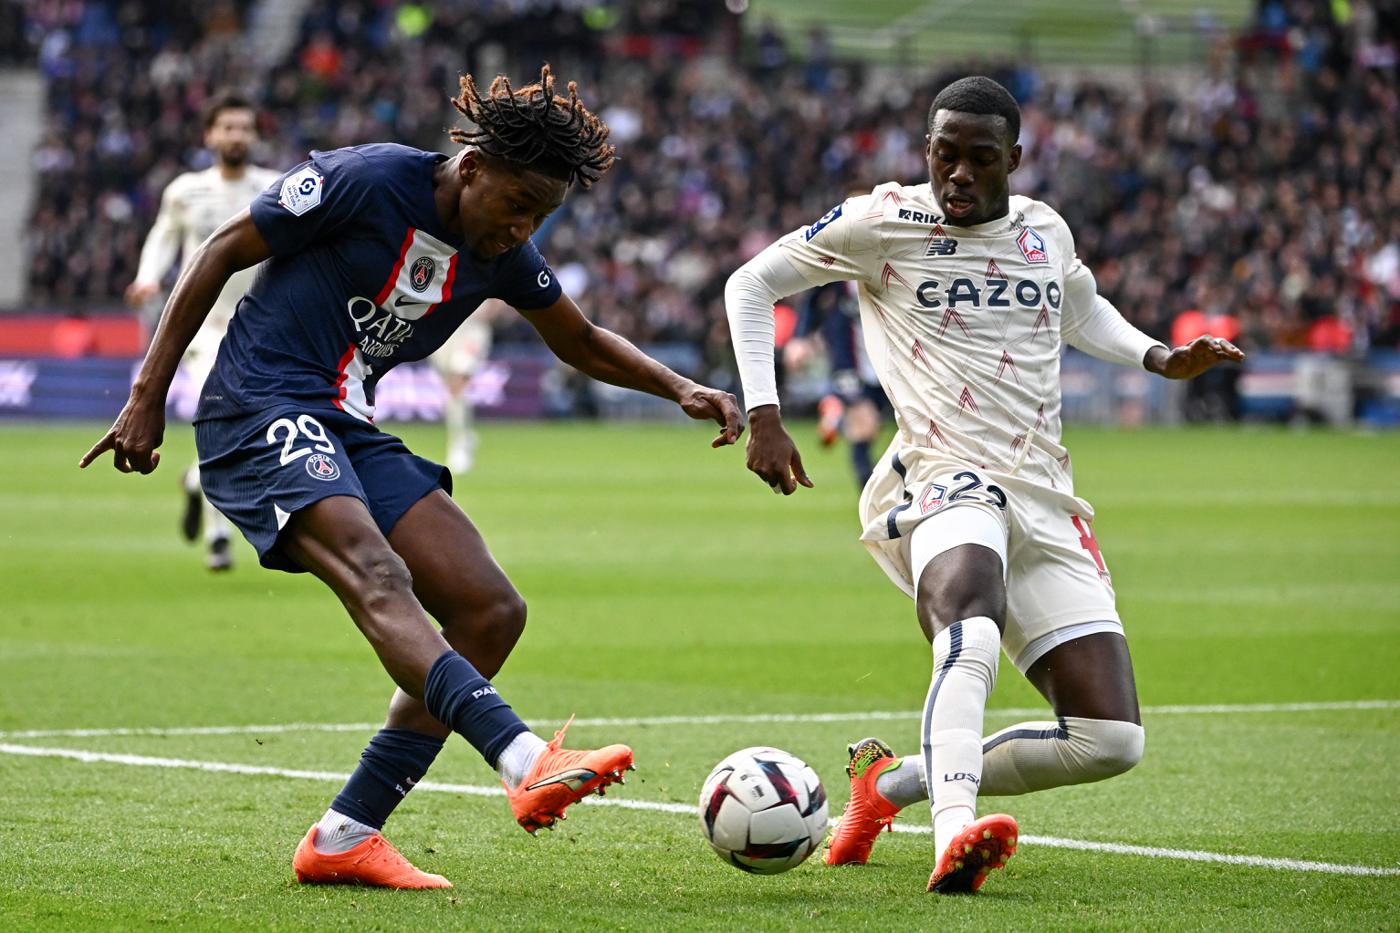 PSG - Lille - 4:3. Französische Meisterschaft, 24. Runde. Spielbericht, Statistiken